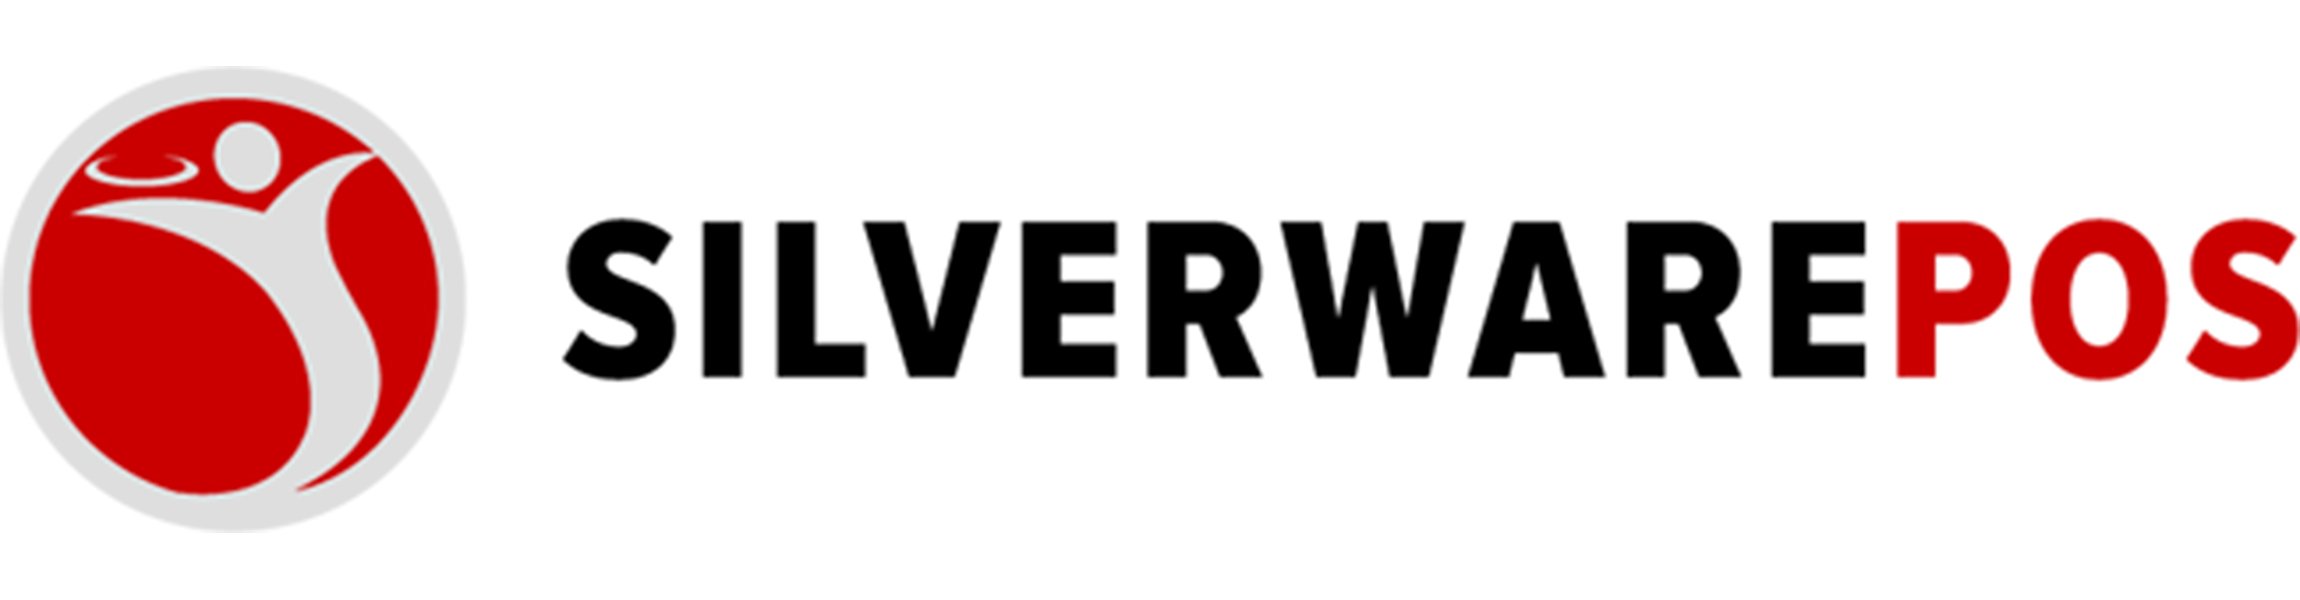 Silverware-POS